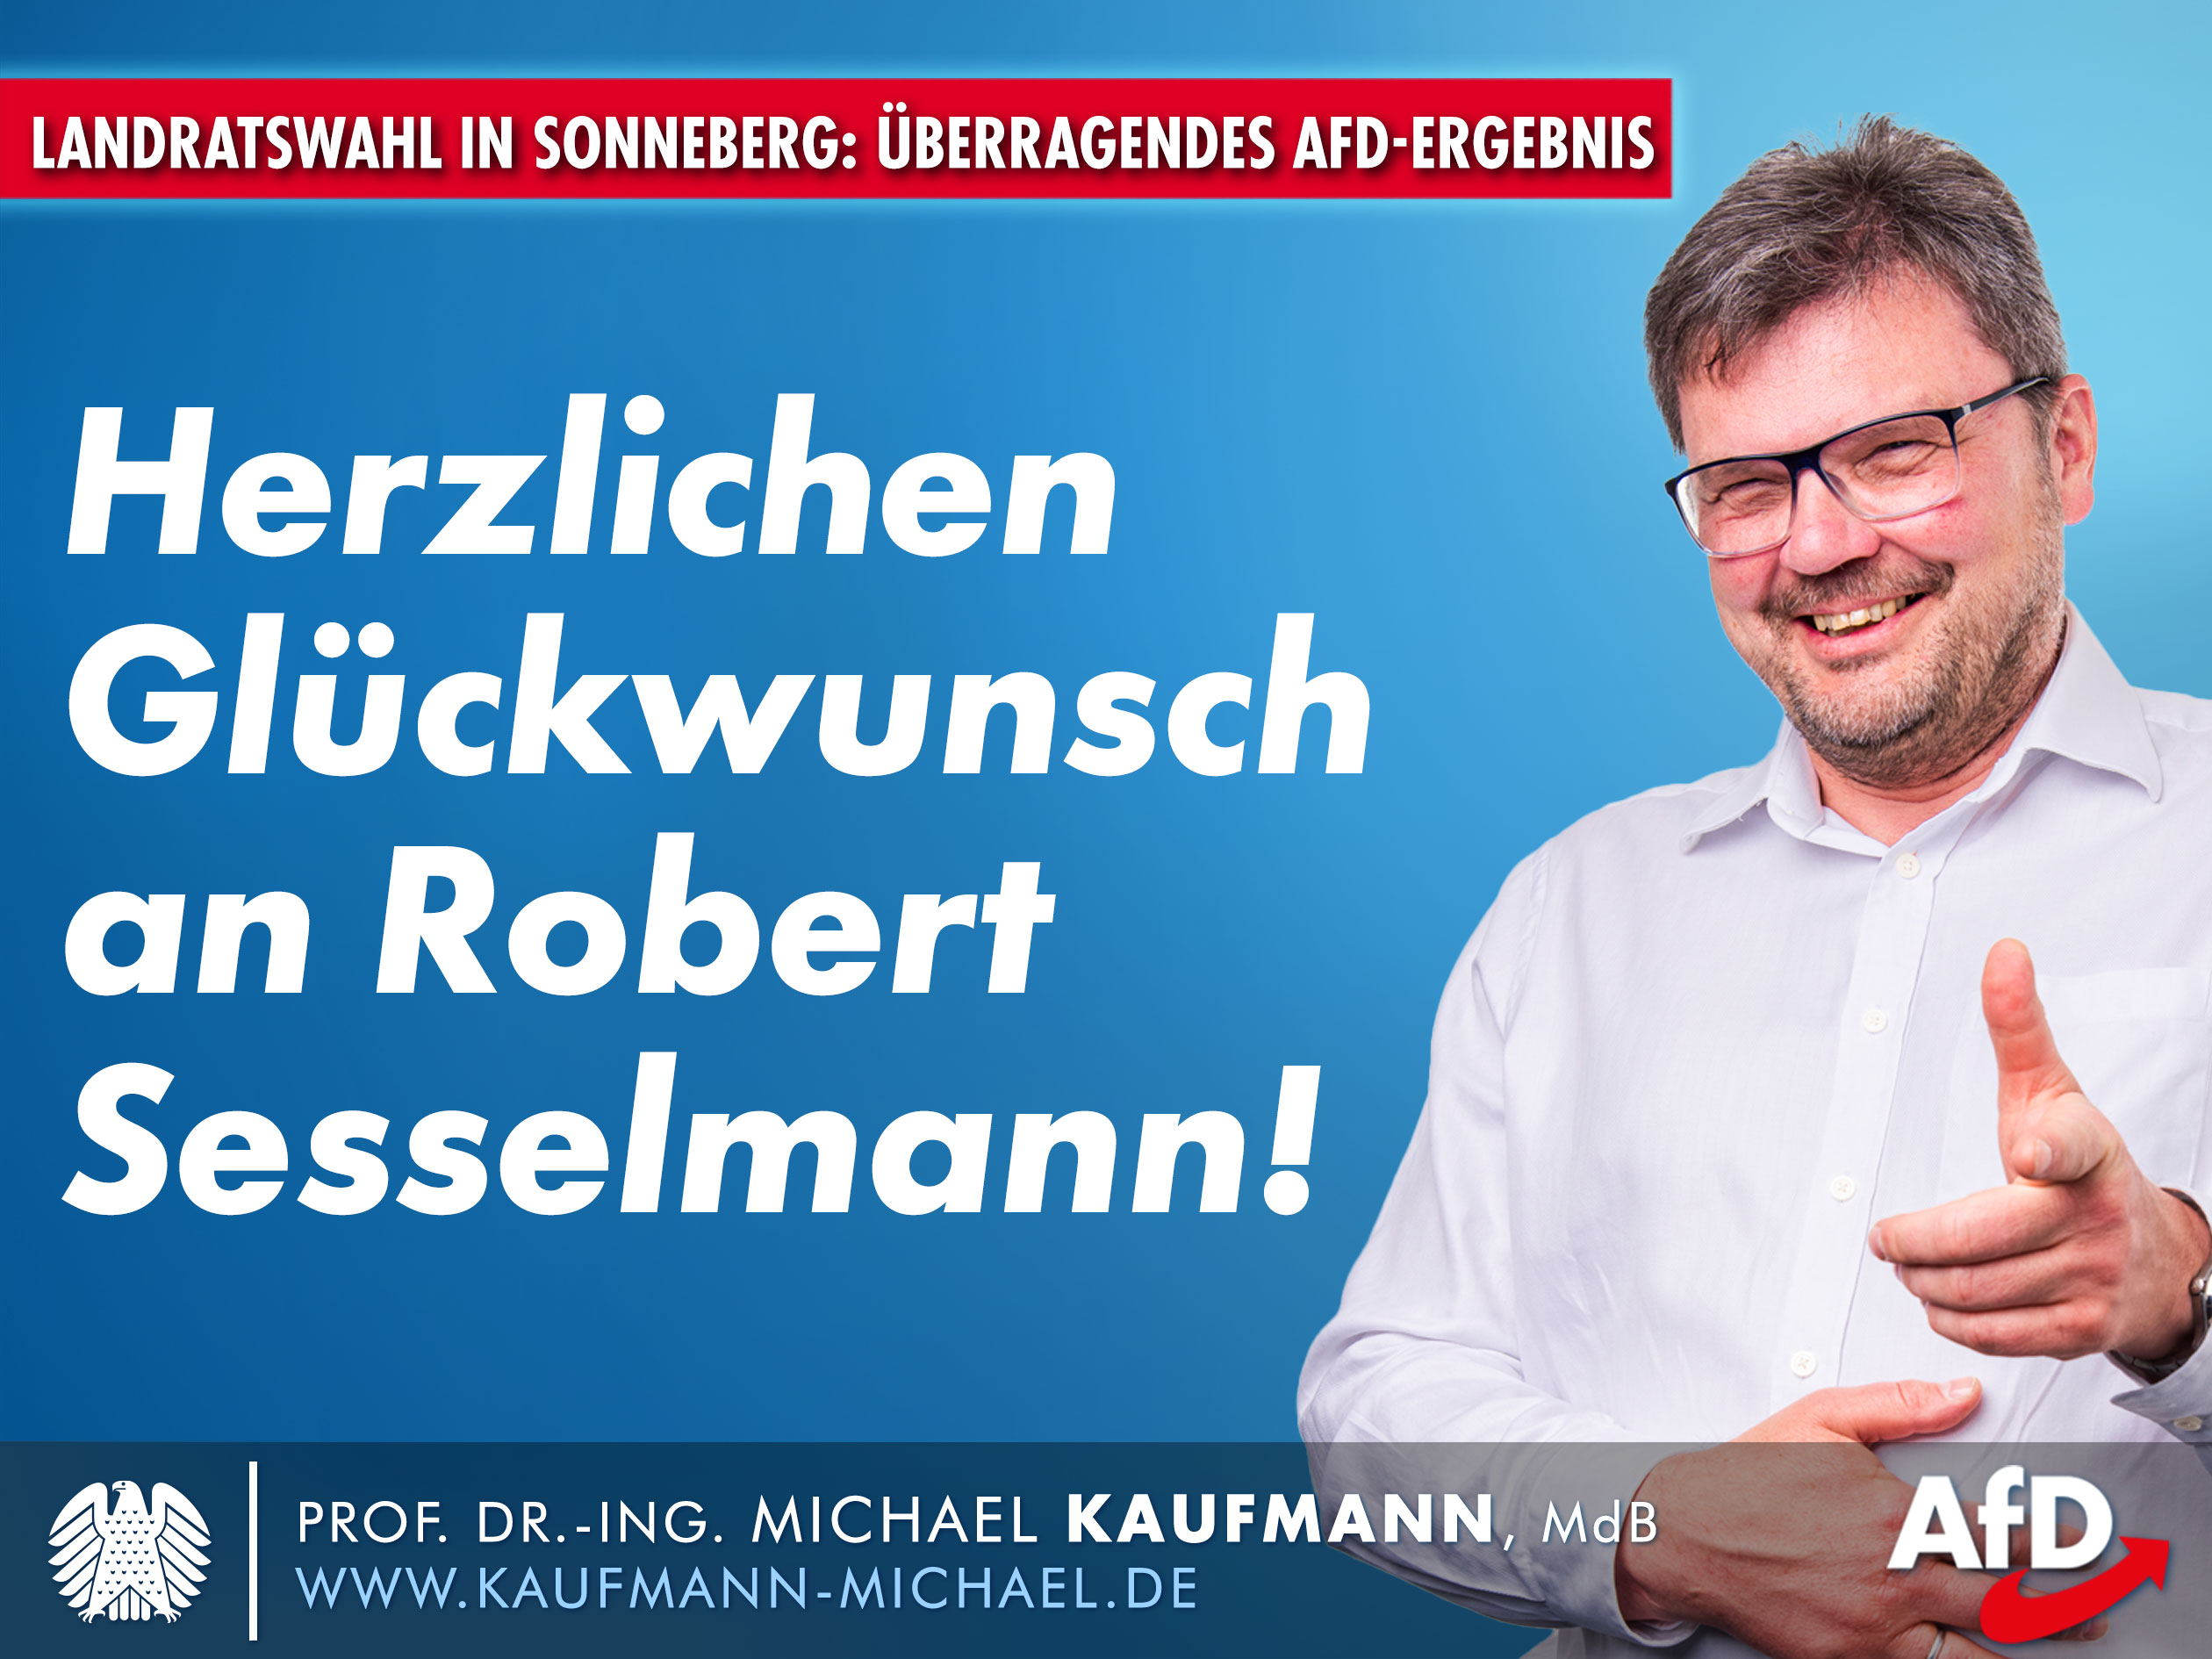 Landratswahl in Sonneberg: Herzlichen Glückwunsch an Robert Sesselmann!